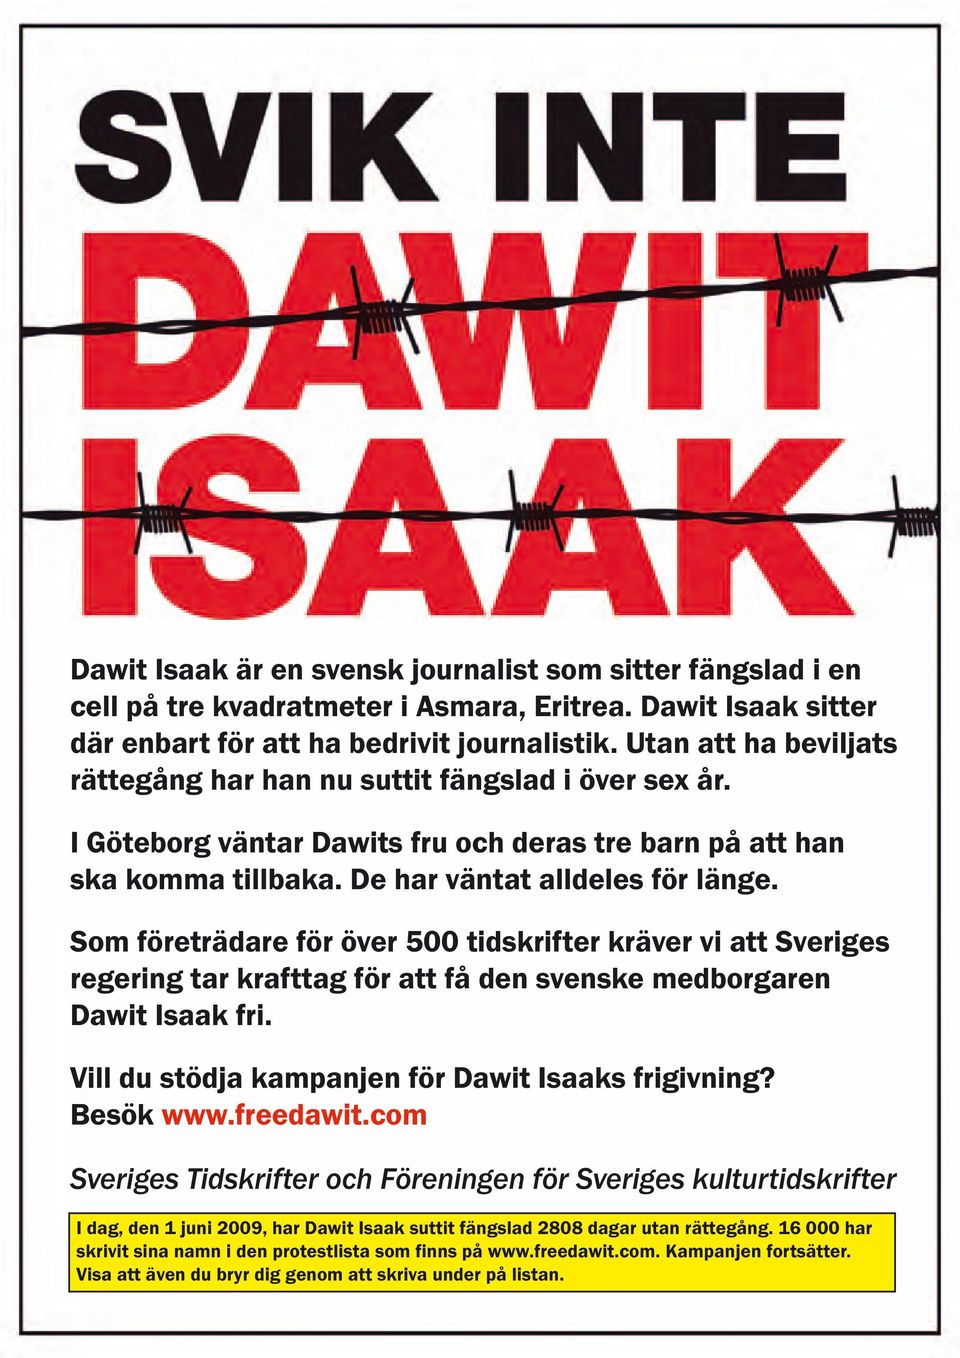 Som företrädare för över 500 tidskrifter kräver vi att Sveriges regering tar krafttag för att få den svenske medborgaren Dawit Isaak fri. Vill du stödja kampanjen för Dawit Isaaks frigivning?